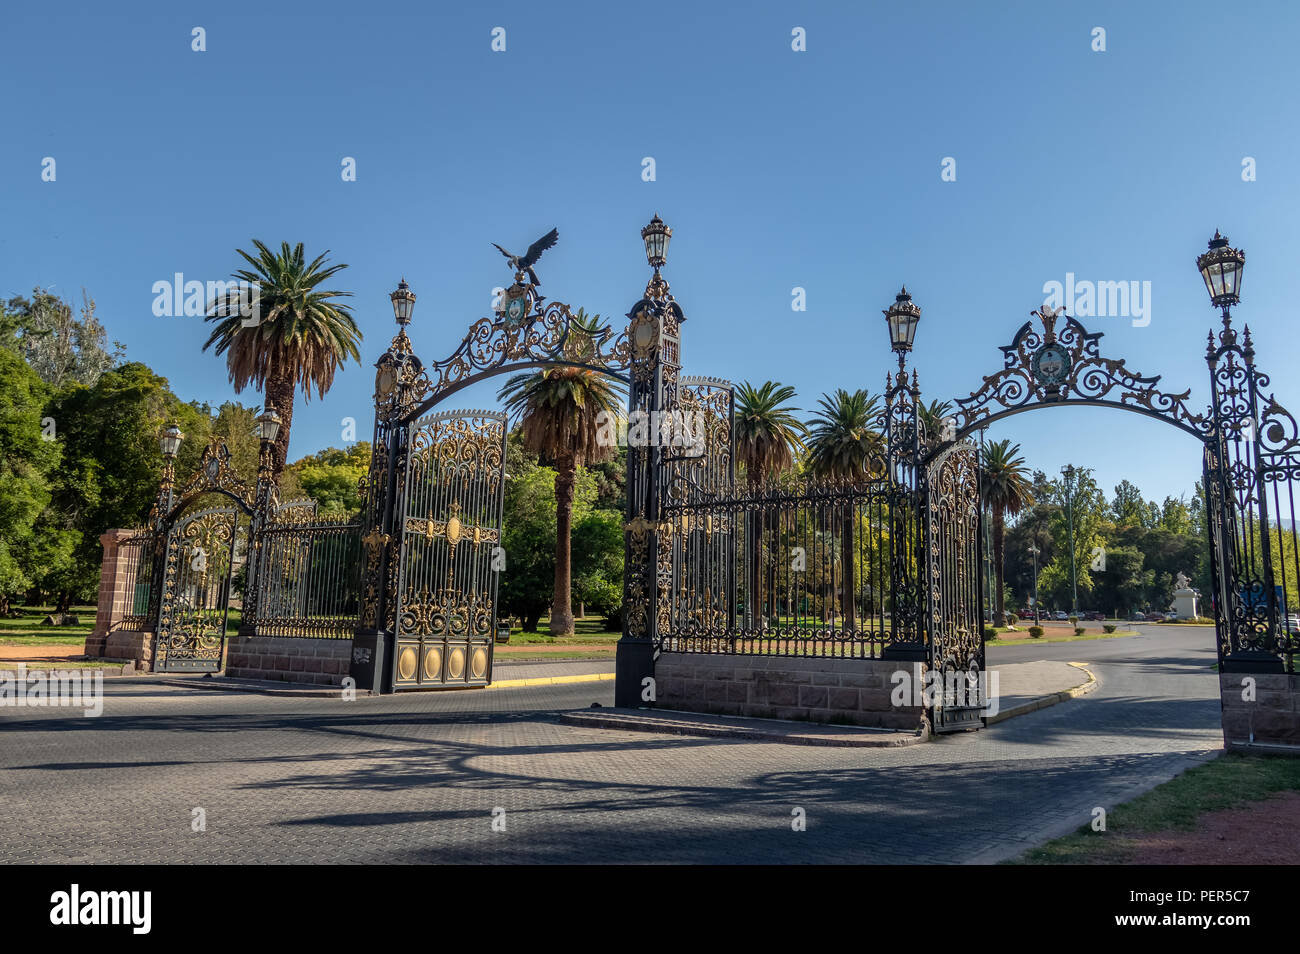 Park Gates (Portones del Parque) at General San Martin Park - Mendoza, Argentina Stock Photo